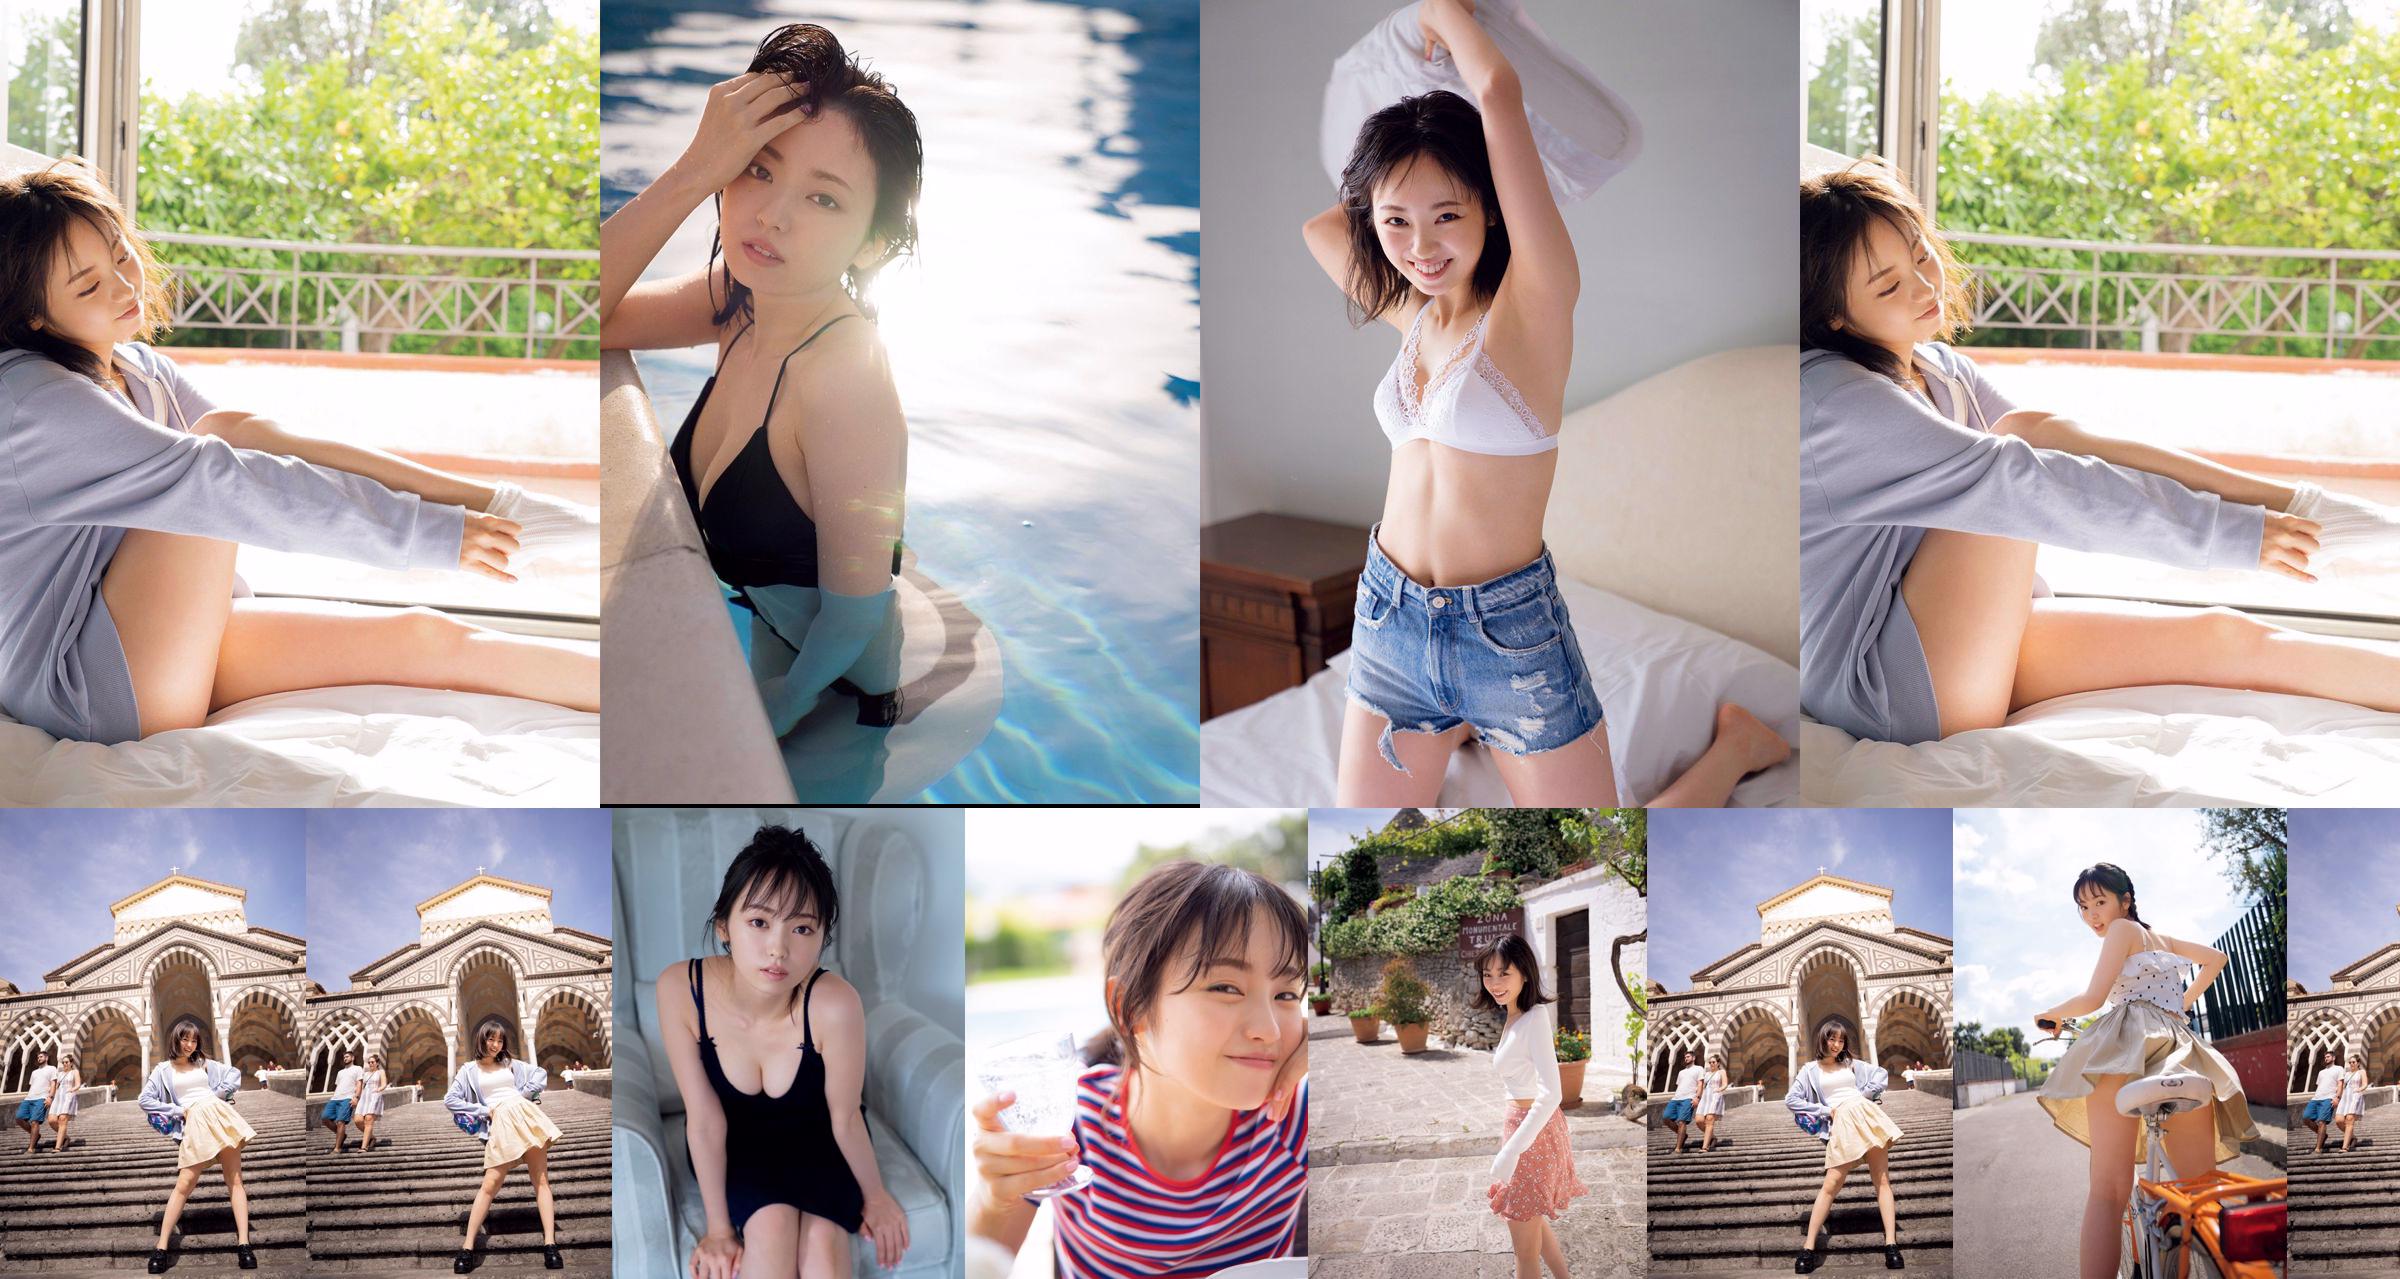 [วันศุกร์] Keyakizaka46, Yui Imaizumi "Swimsuit & Lingerie of" First and Last! "" รูปภาพ No.b30fc4 หน้า 1